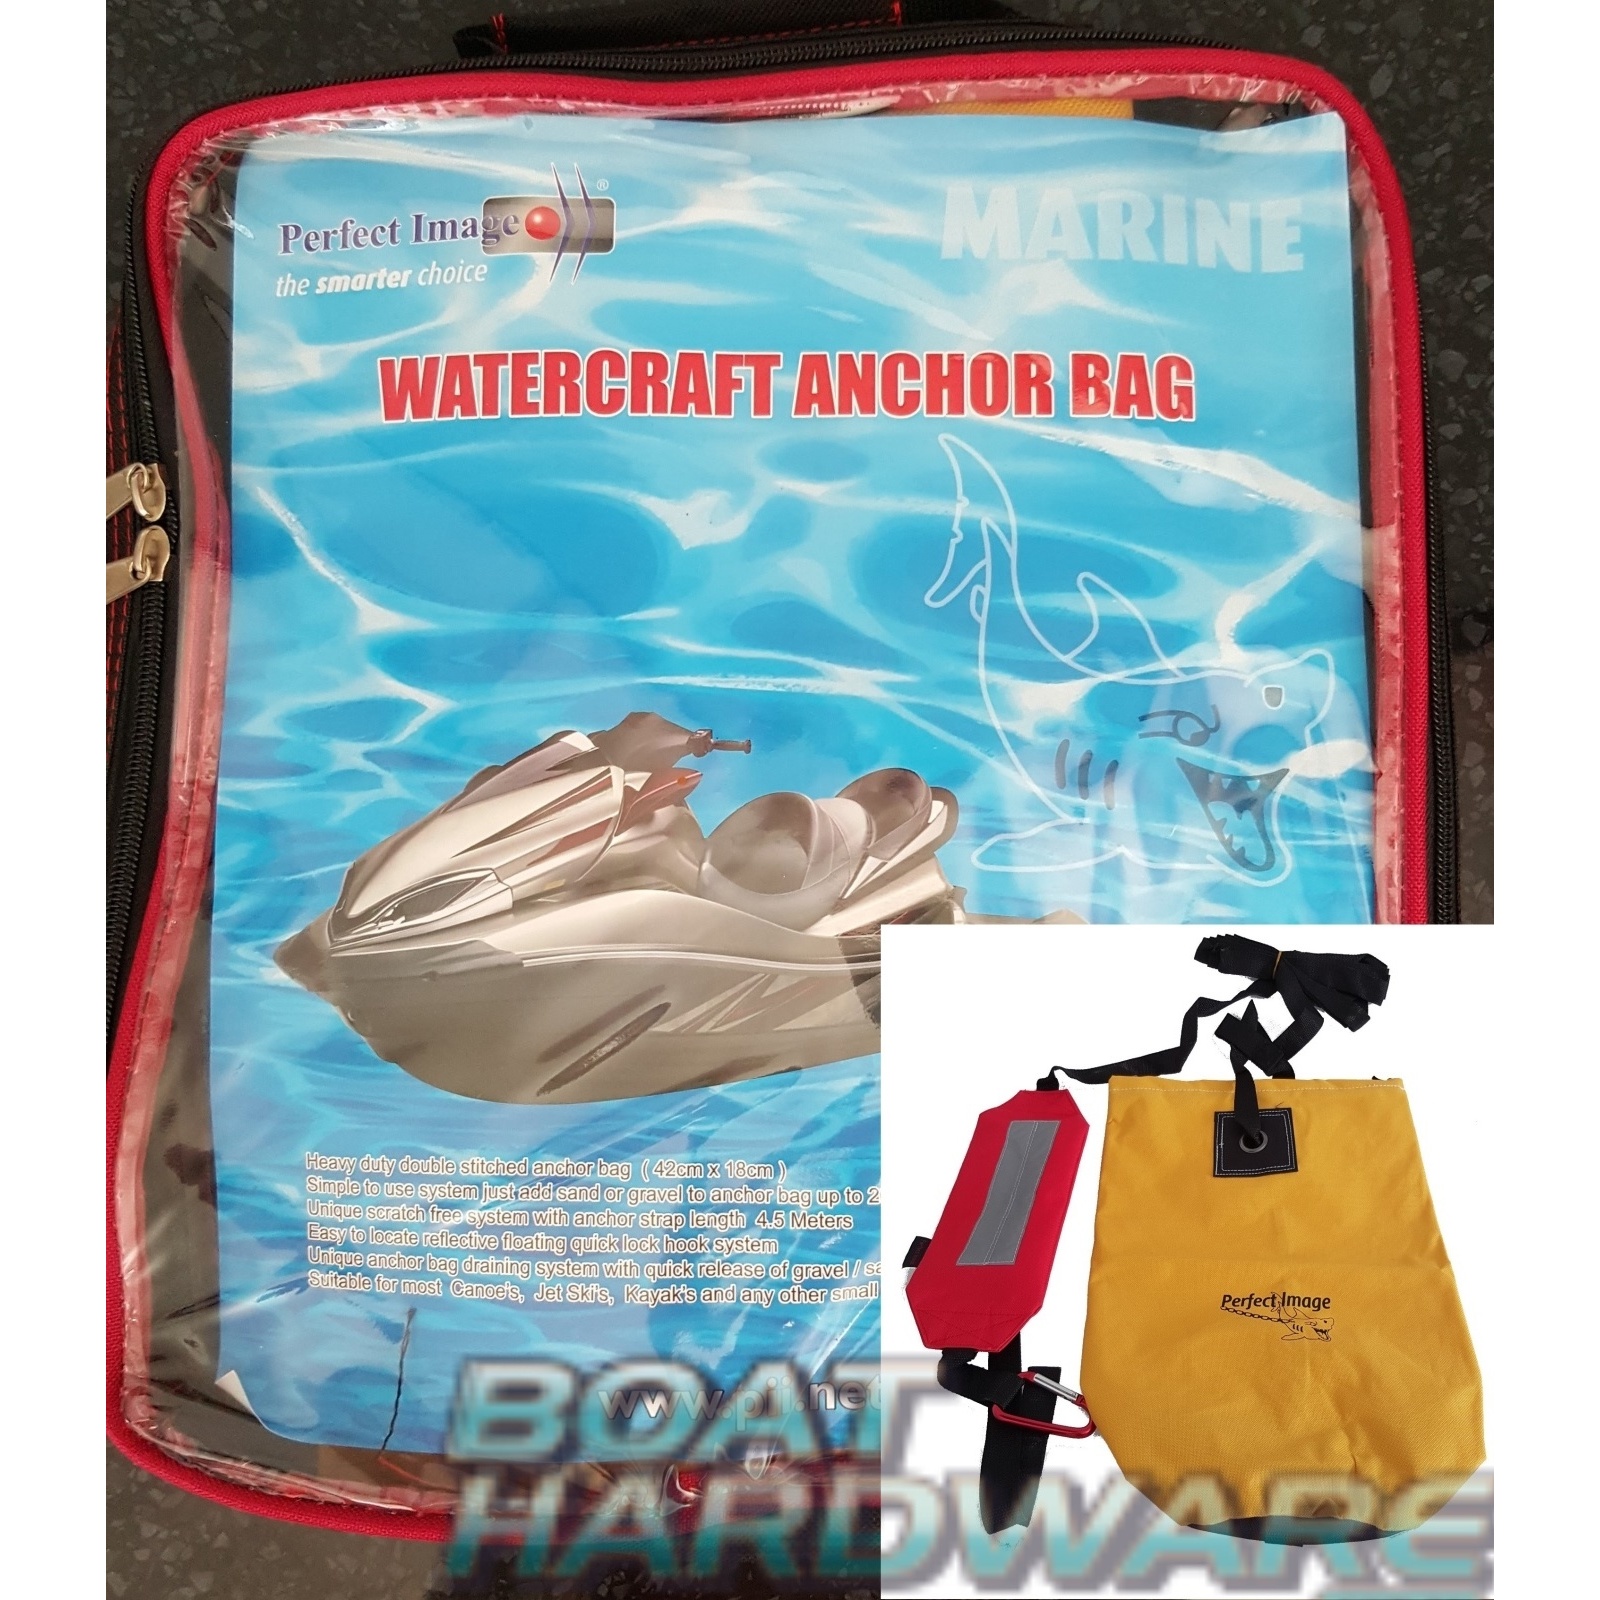 Watercraft Anchor Bag